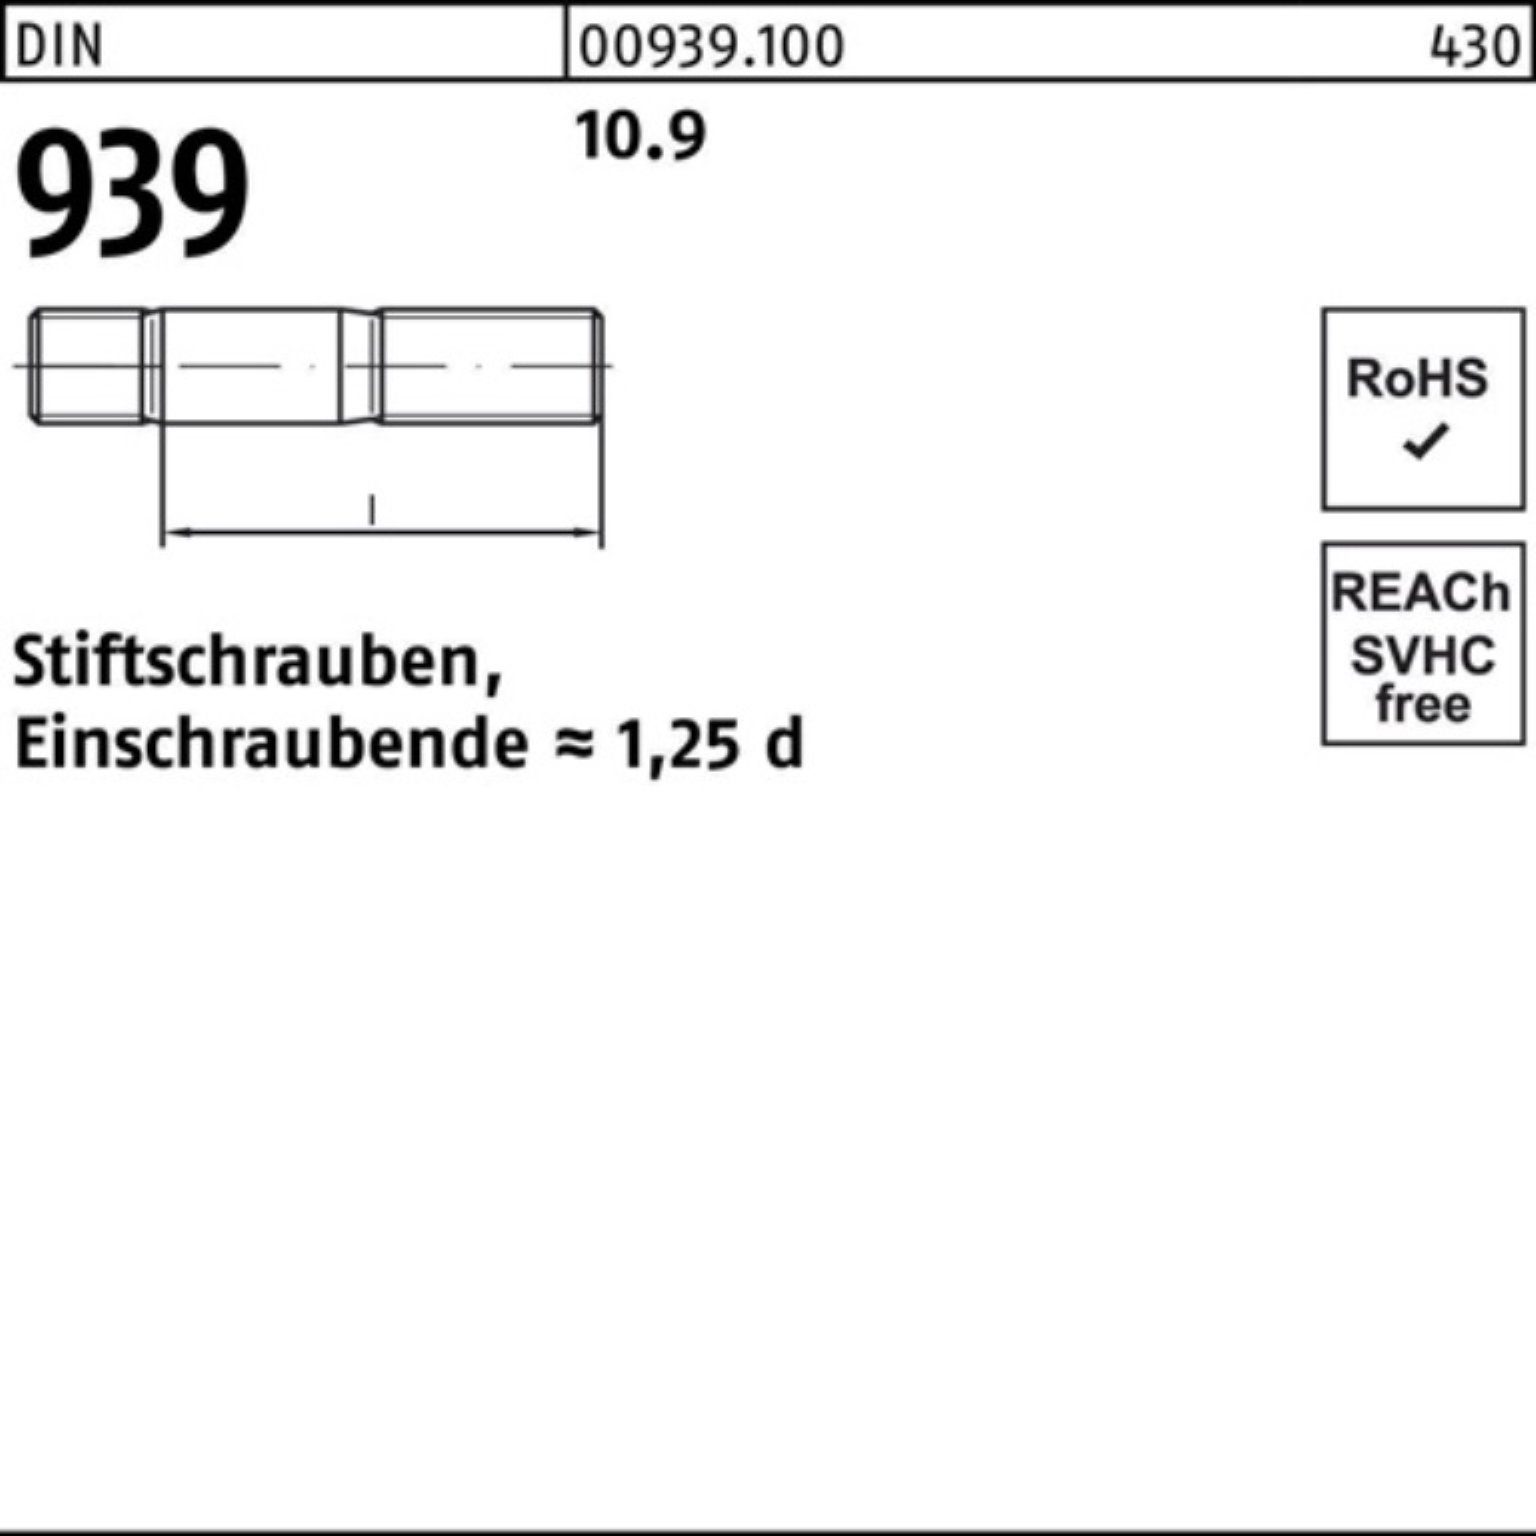 Stiftschraube DIN M16x Stiftschraube Pack Einschraubende=1,25d 100er Reyher 10.9 10 939 110